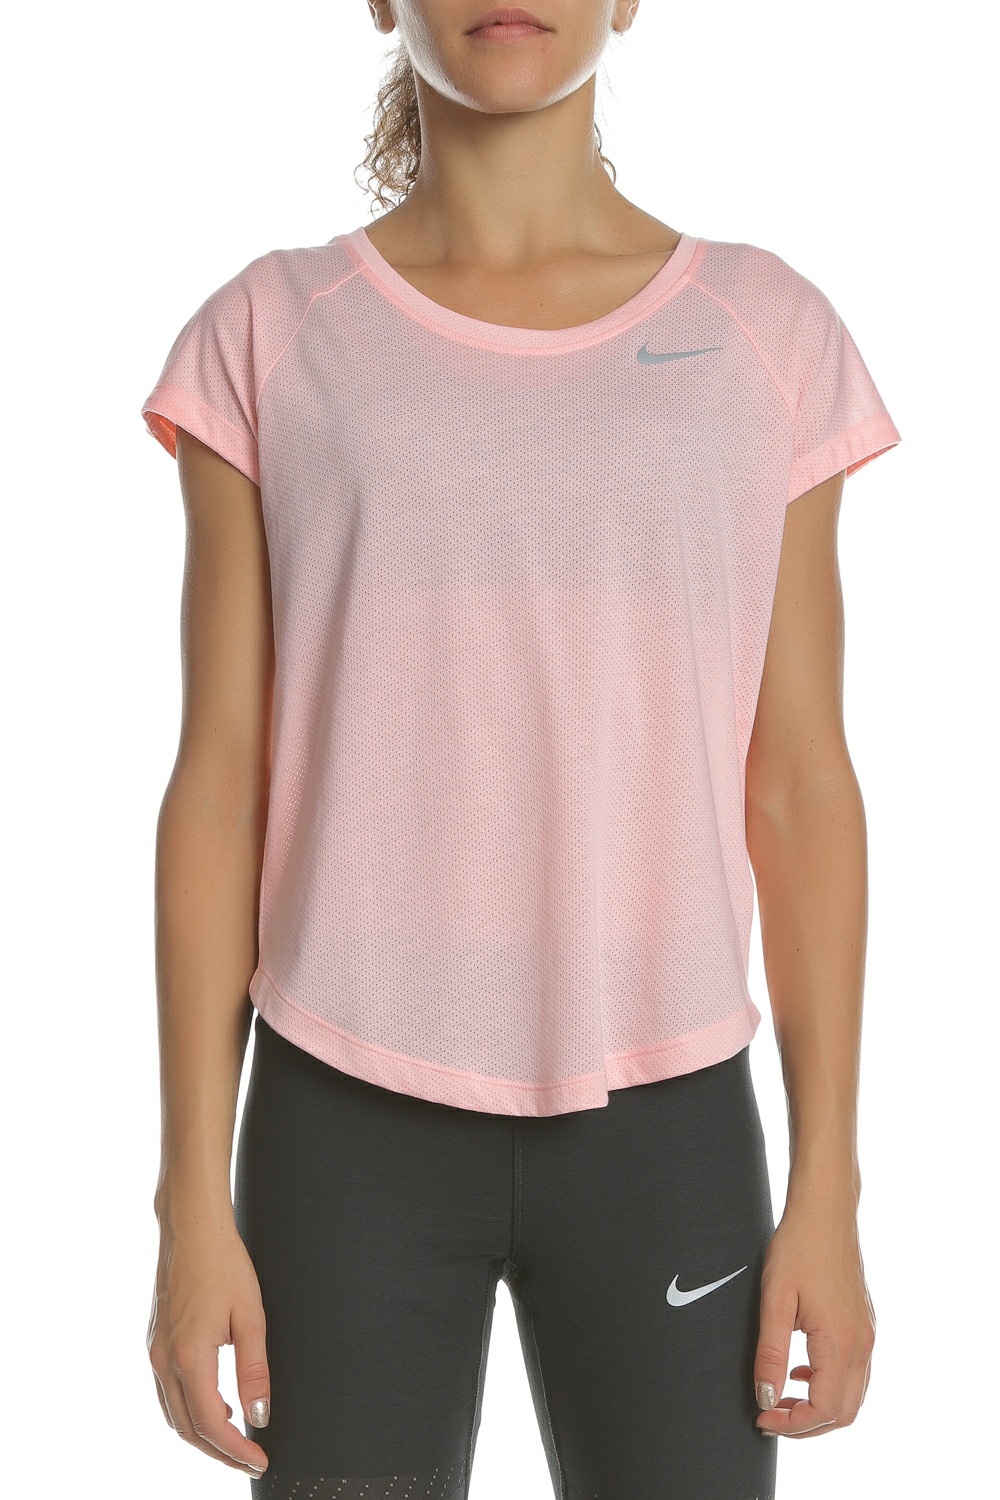 Γυναικεία/Ρούχα/Αθλητικά/T-shirt-Τοπ NIKE - Γυναικεία κοντομάνικη μπλούζα TAILWIND TOP SS COOL LX ροζ